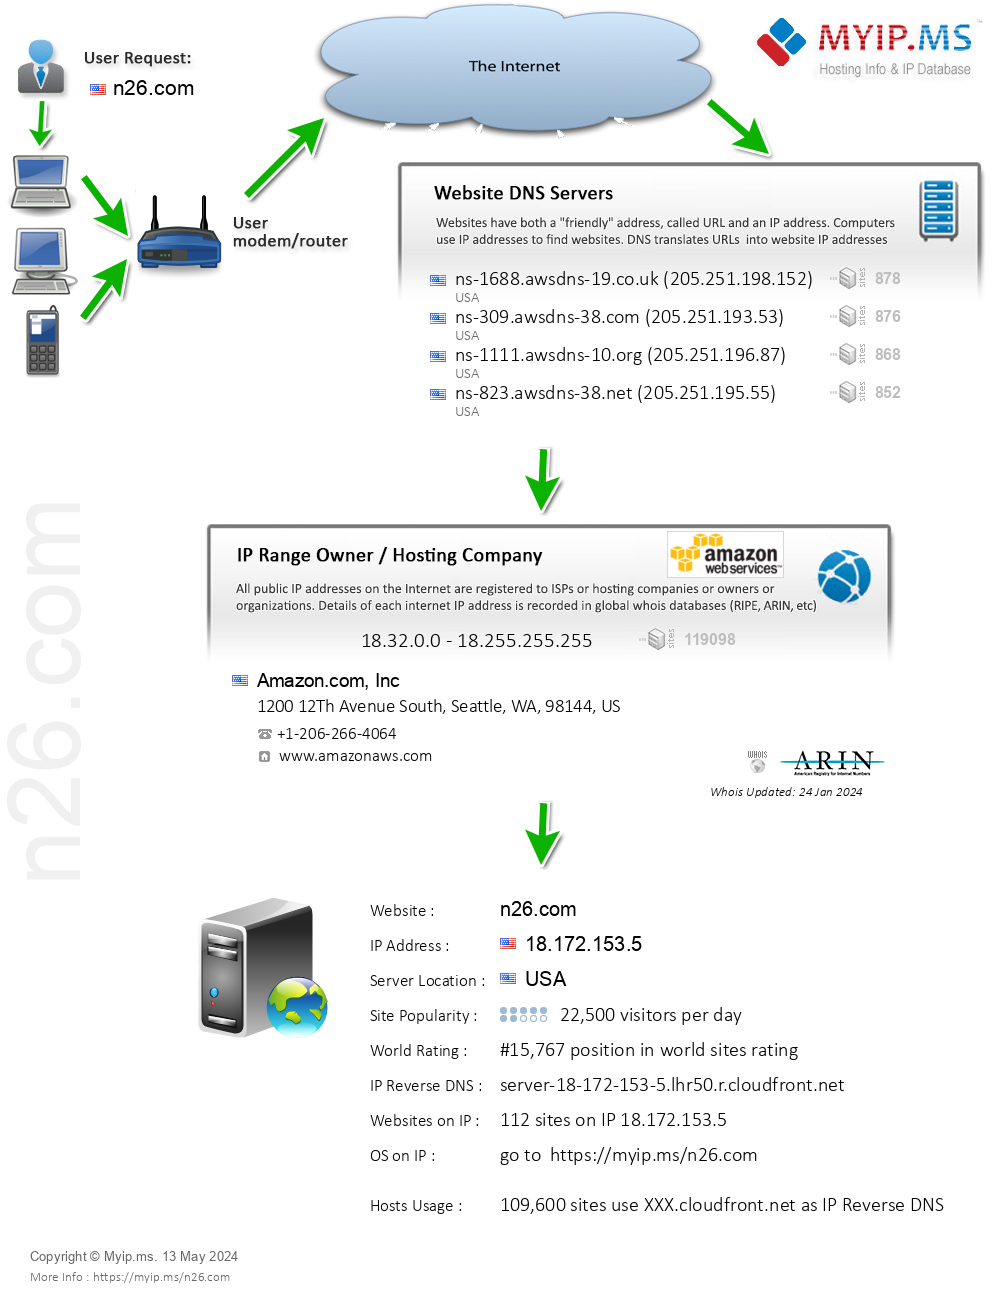 N26.com - Website Hosting Visual IP Diagram